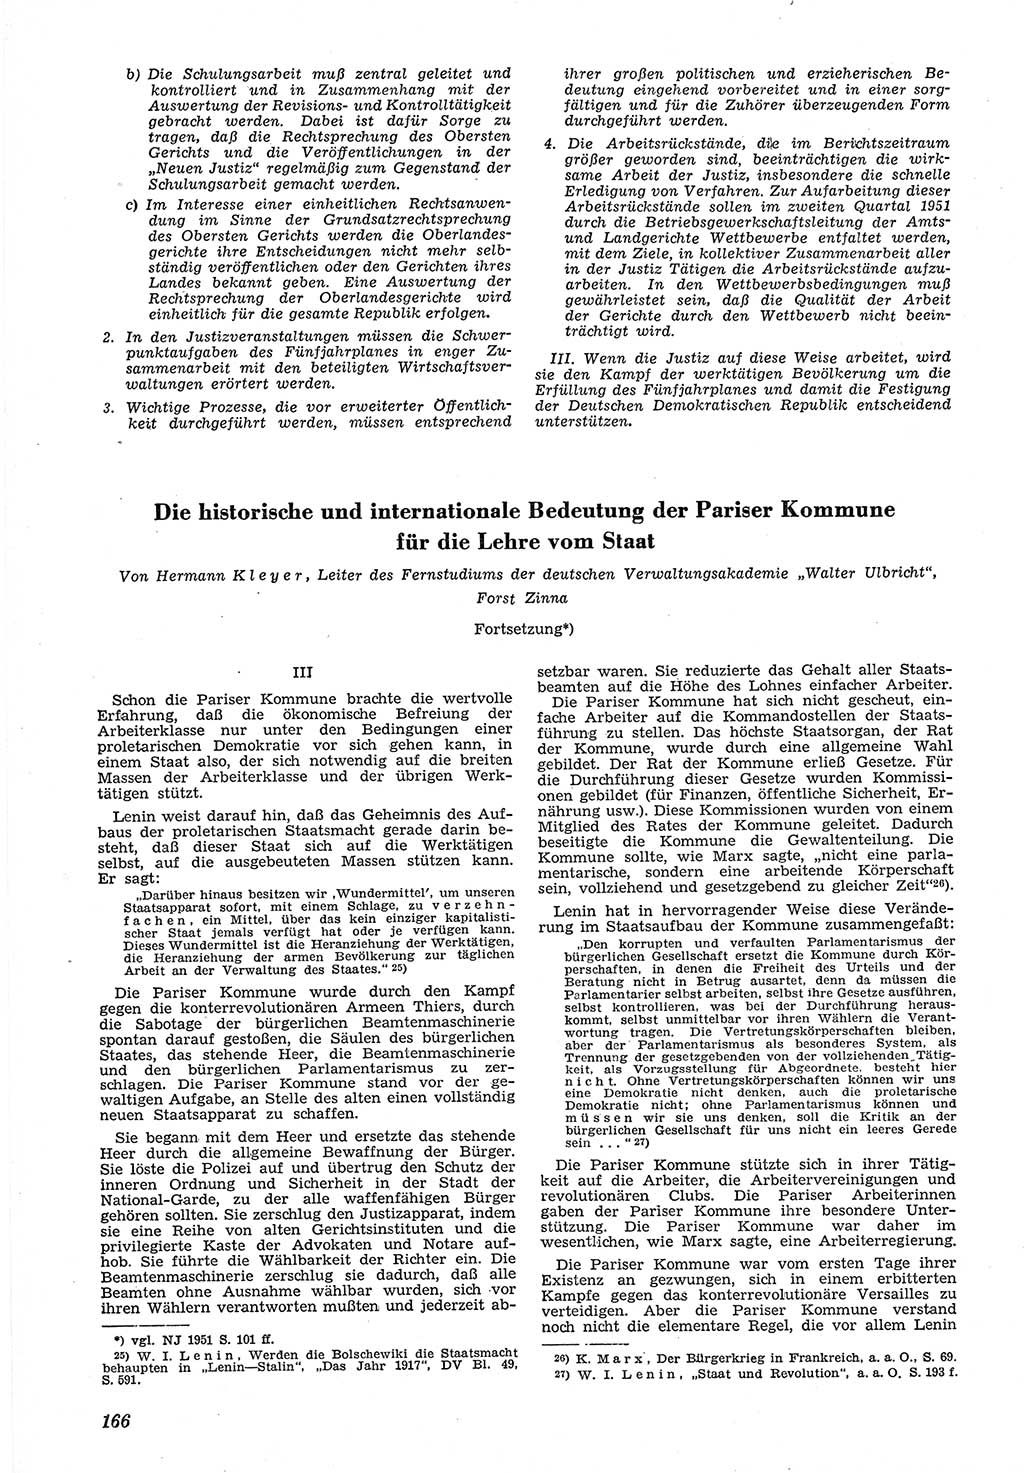 Neue Justiz (NJ), Zeitschrift für Recht und Rechtswissenschaft [Deutsche Demokratische Republik (DDR)], 5. Jahrgang 1951, Seite 166 (NJ DDR 1951, S. 166)